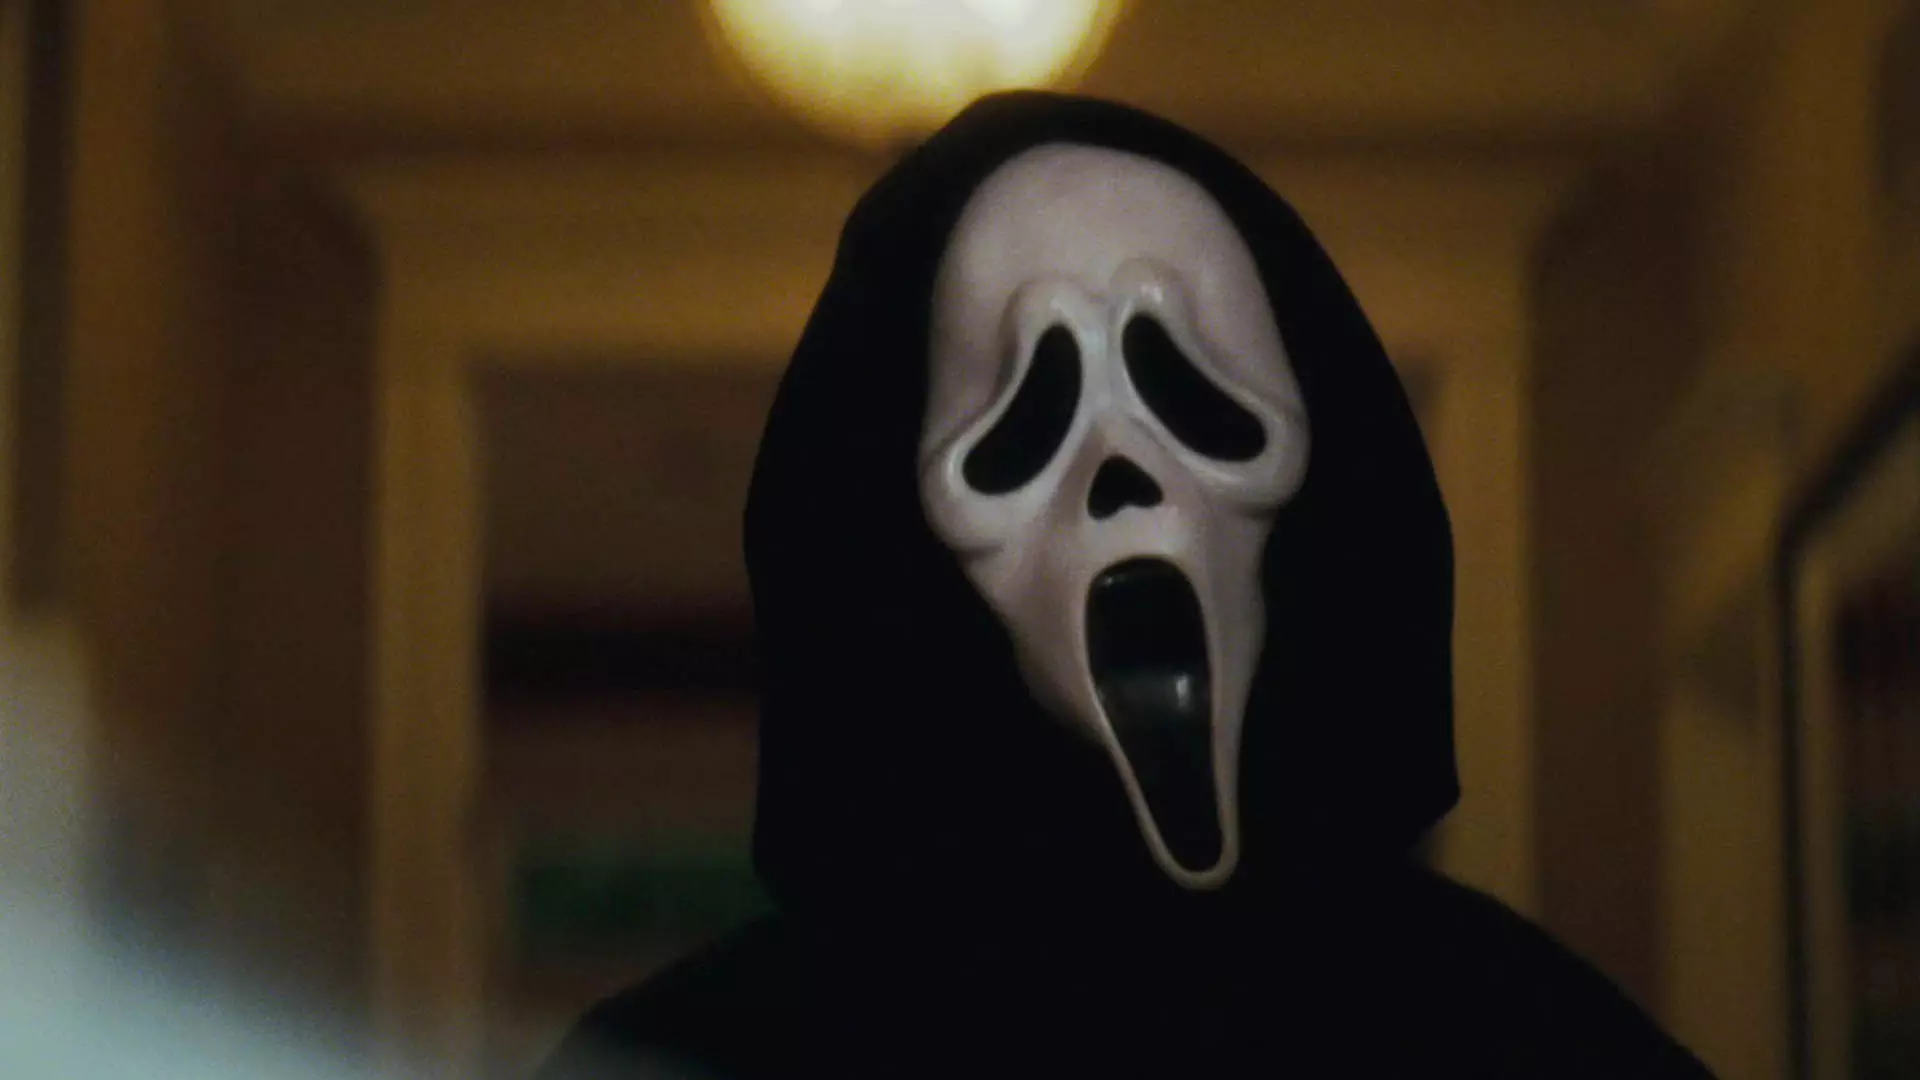 شخصیت شرور مجموعه سینمایی Scream با ماسکی سفید رنگ